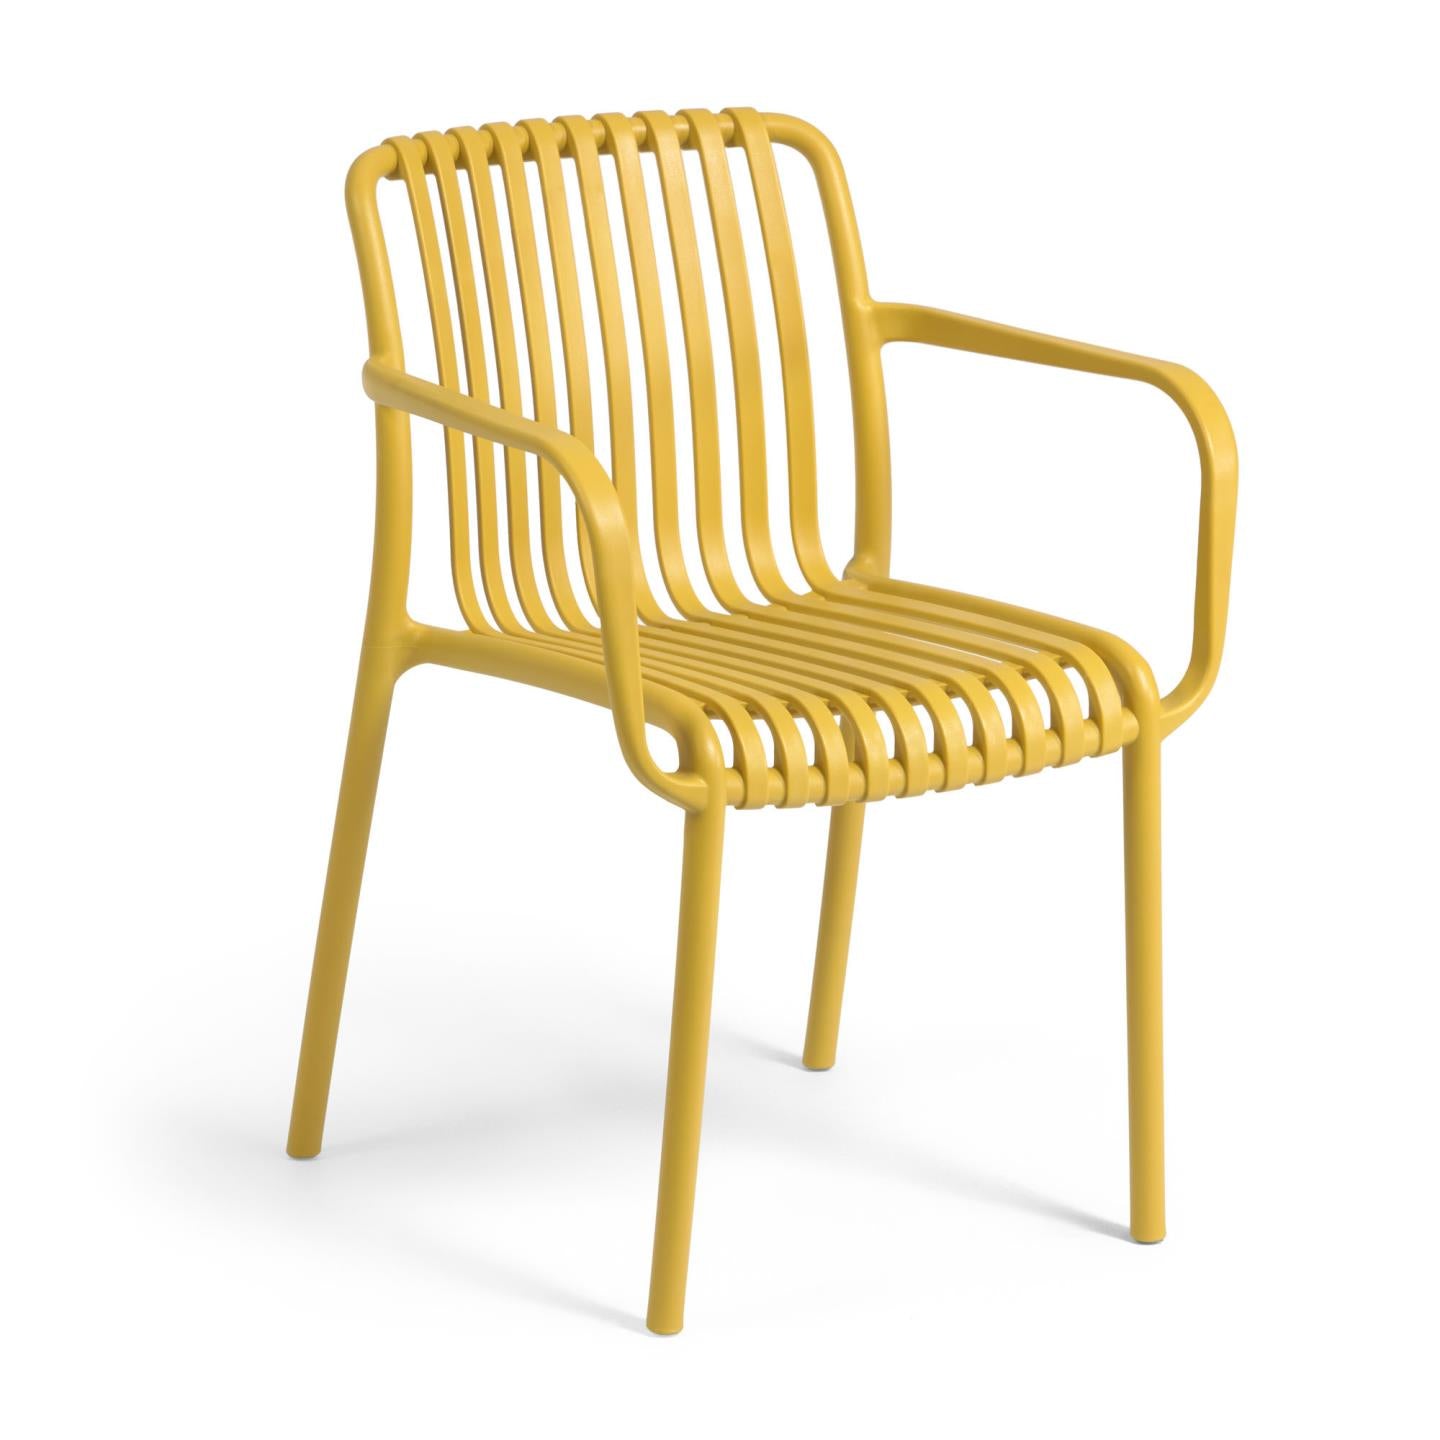 Isabellini egymásba rakható kültéri szék sárga színben